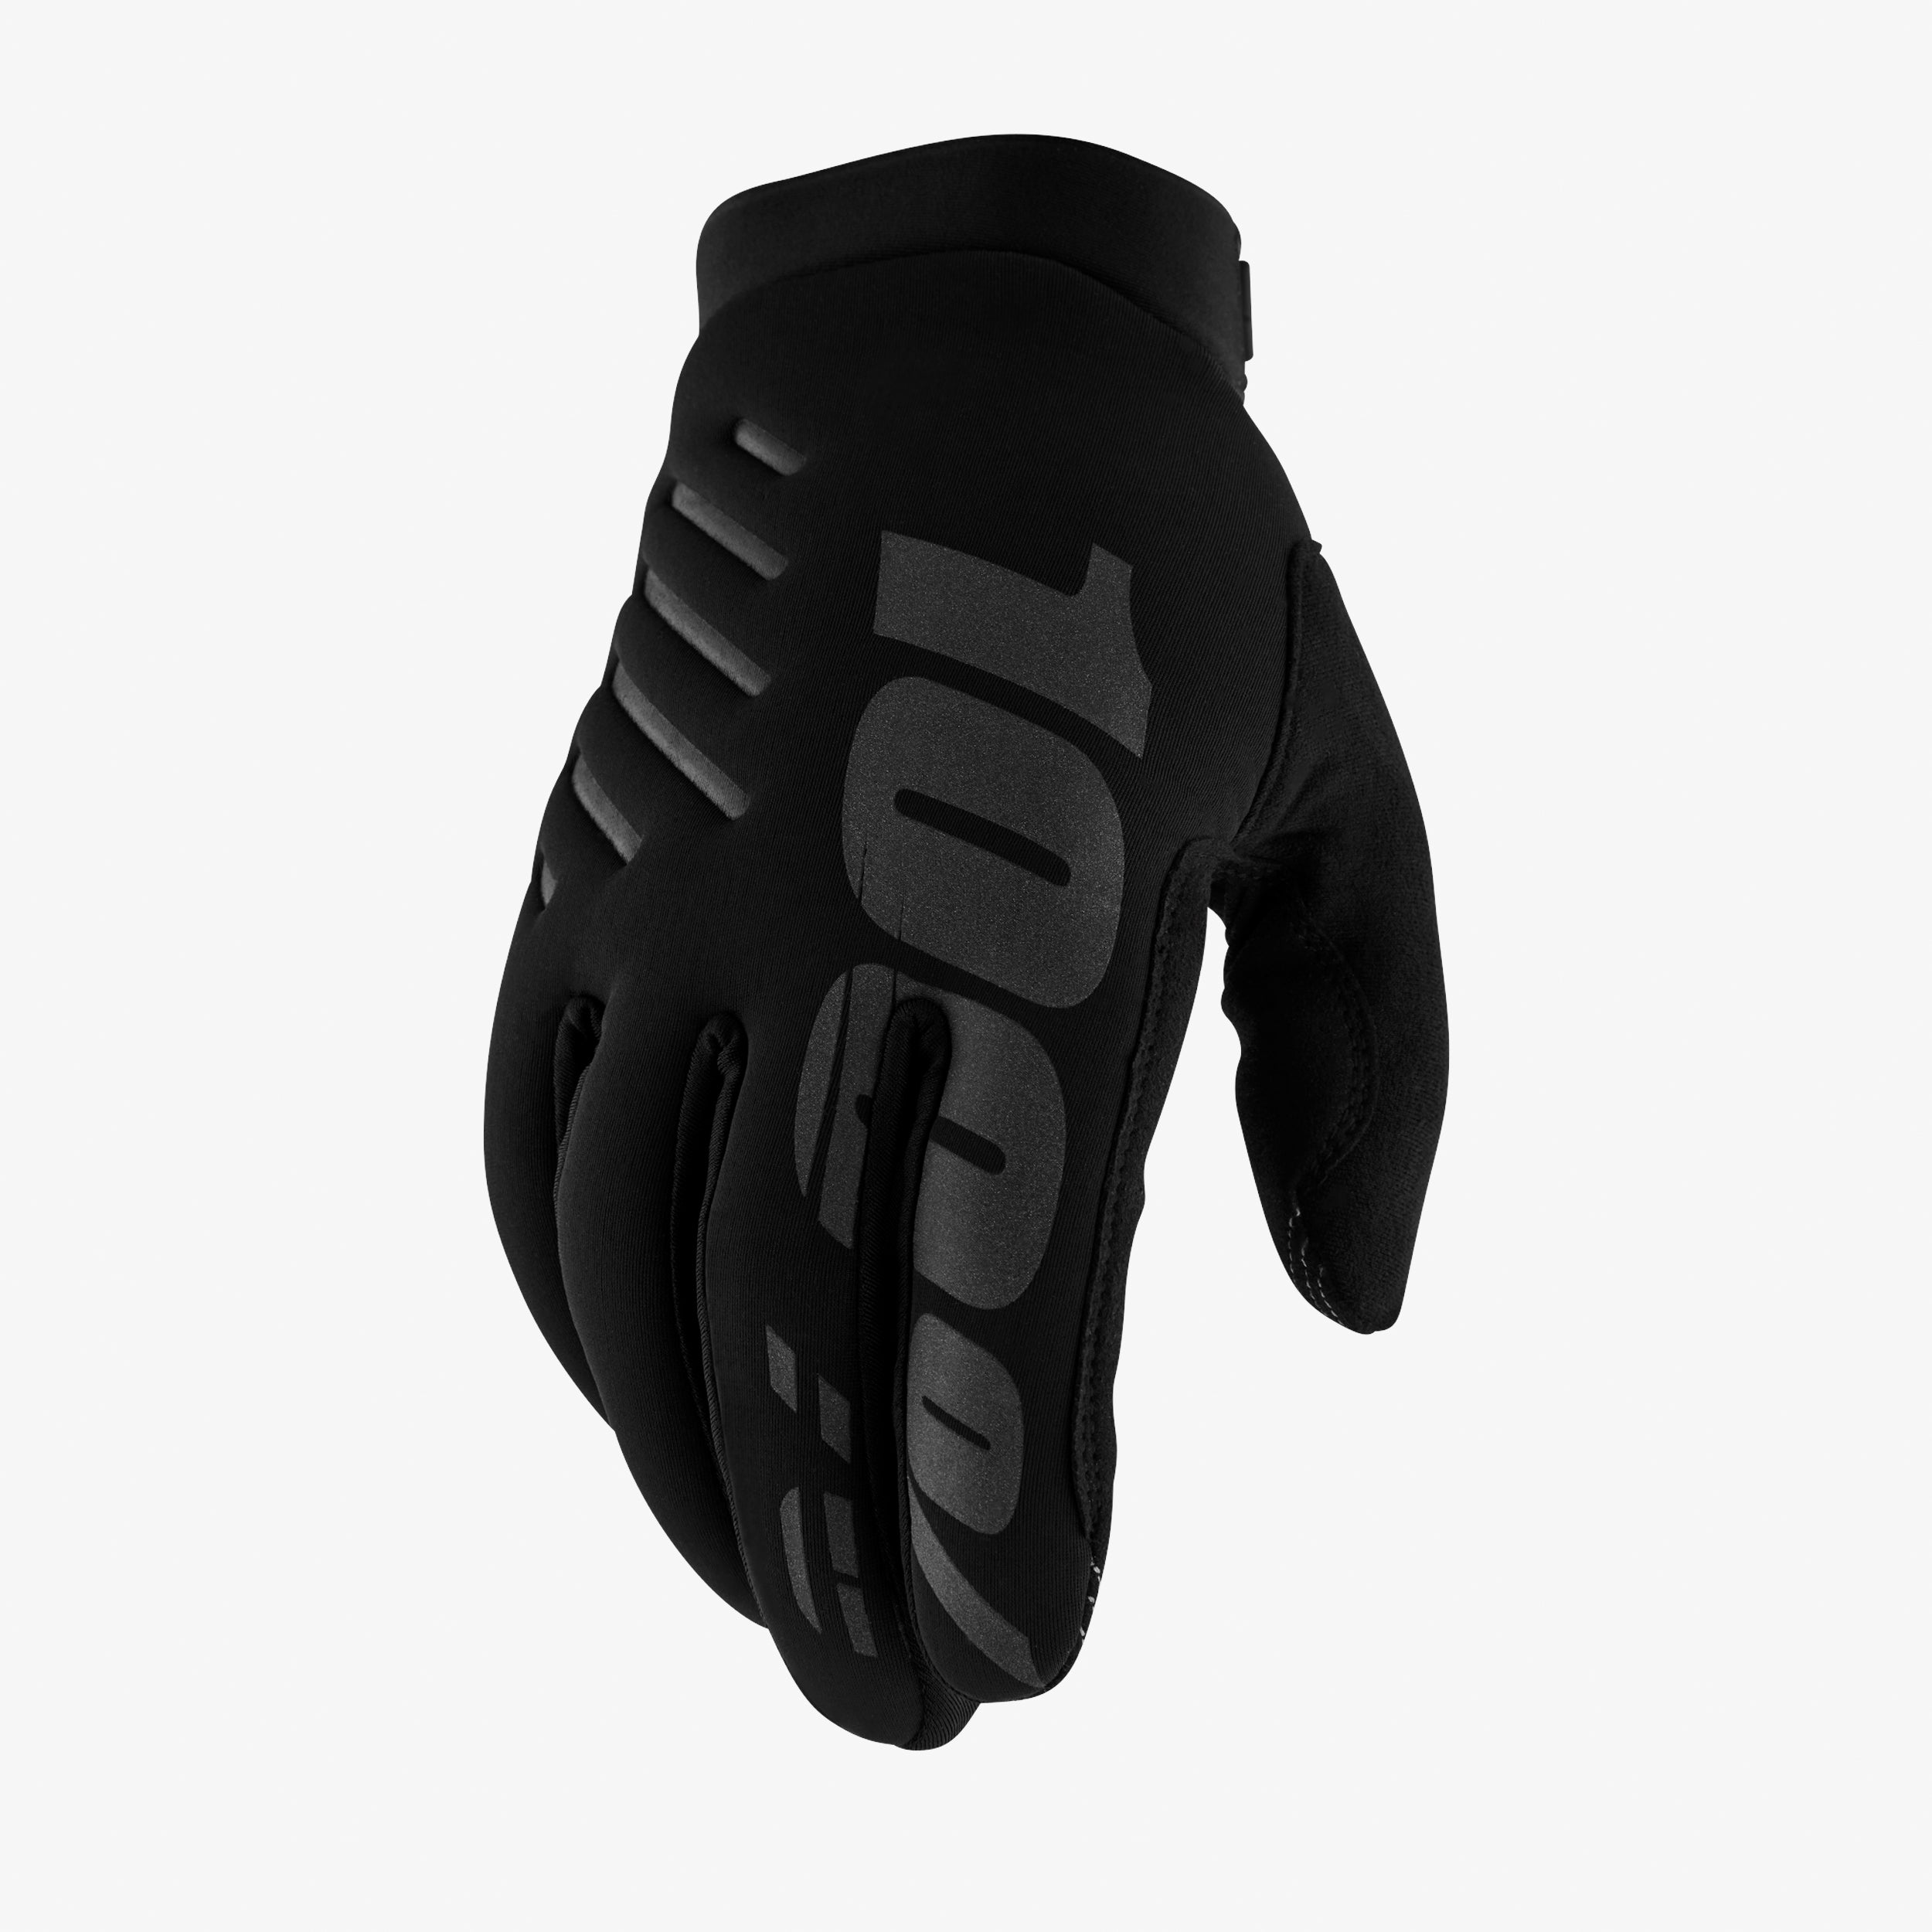 BRISKER Women's Gloves Black